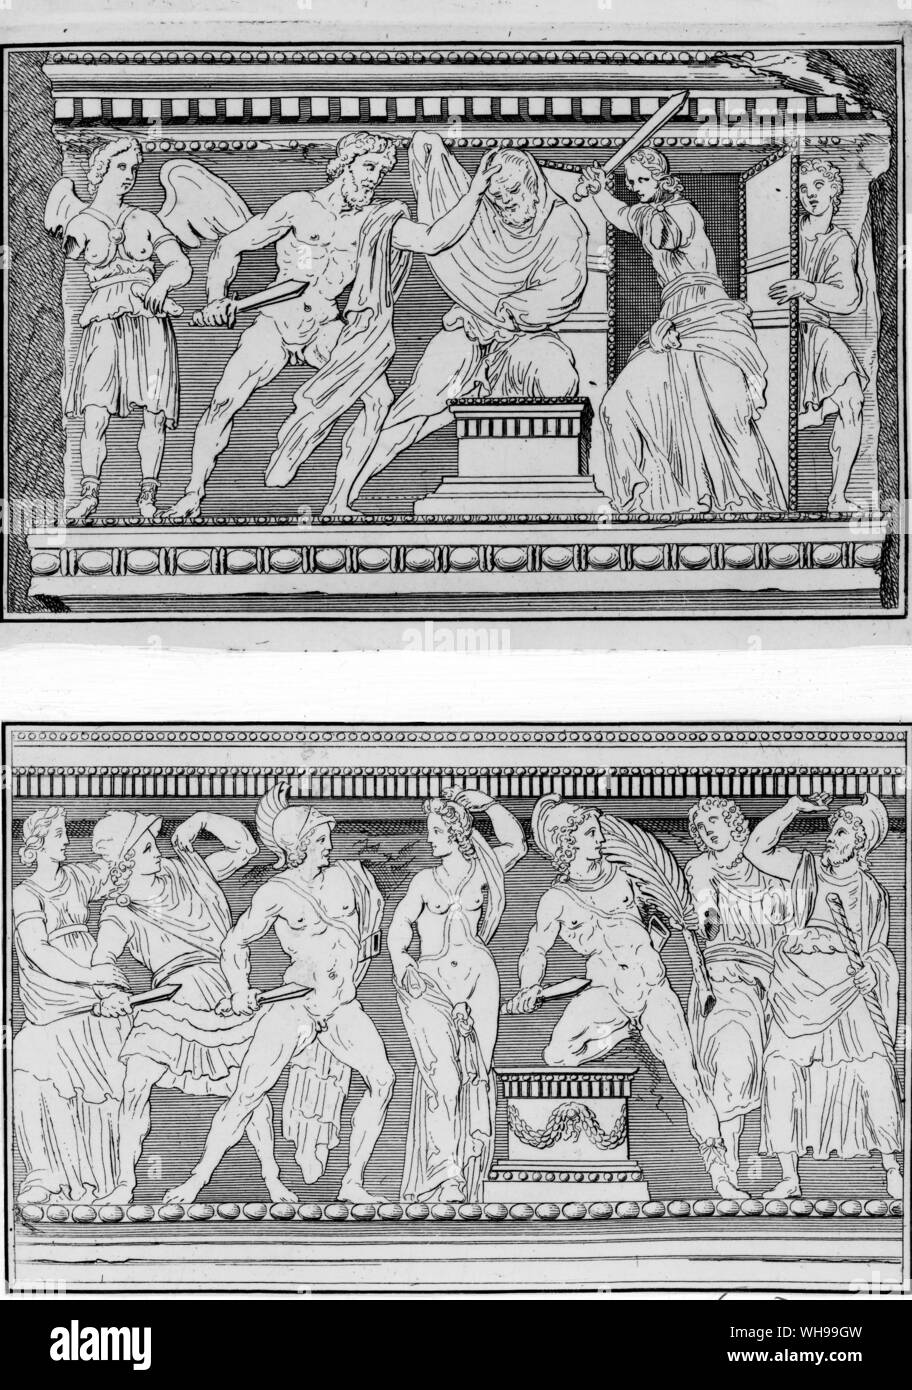 Illustrazione da Dempster De Etruria mostra episodi tratti dalla mitologia greca scavate sui lati di un sarcofago di marmo Foto Stock